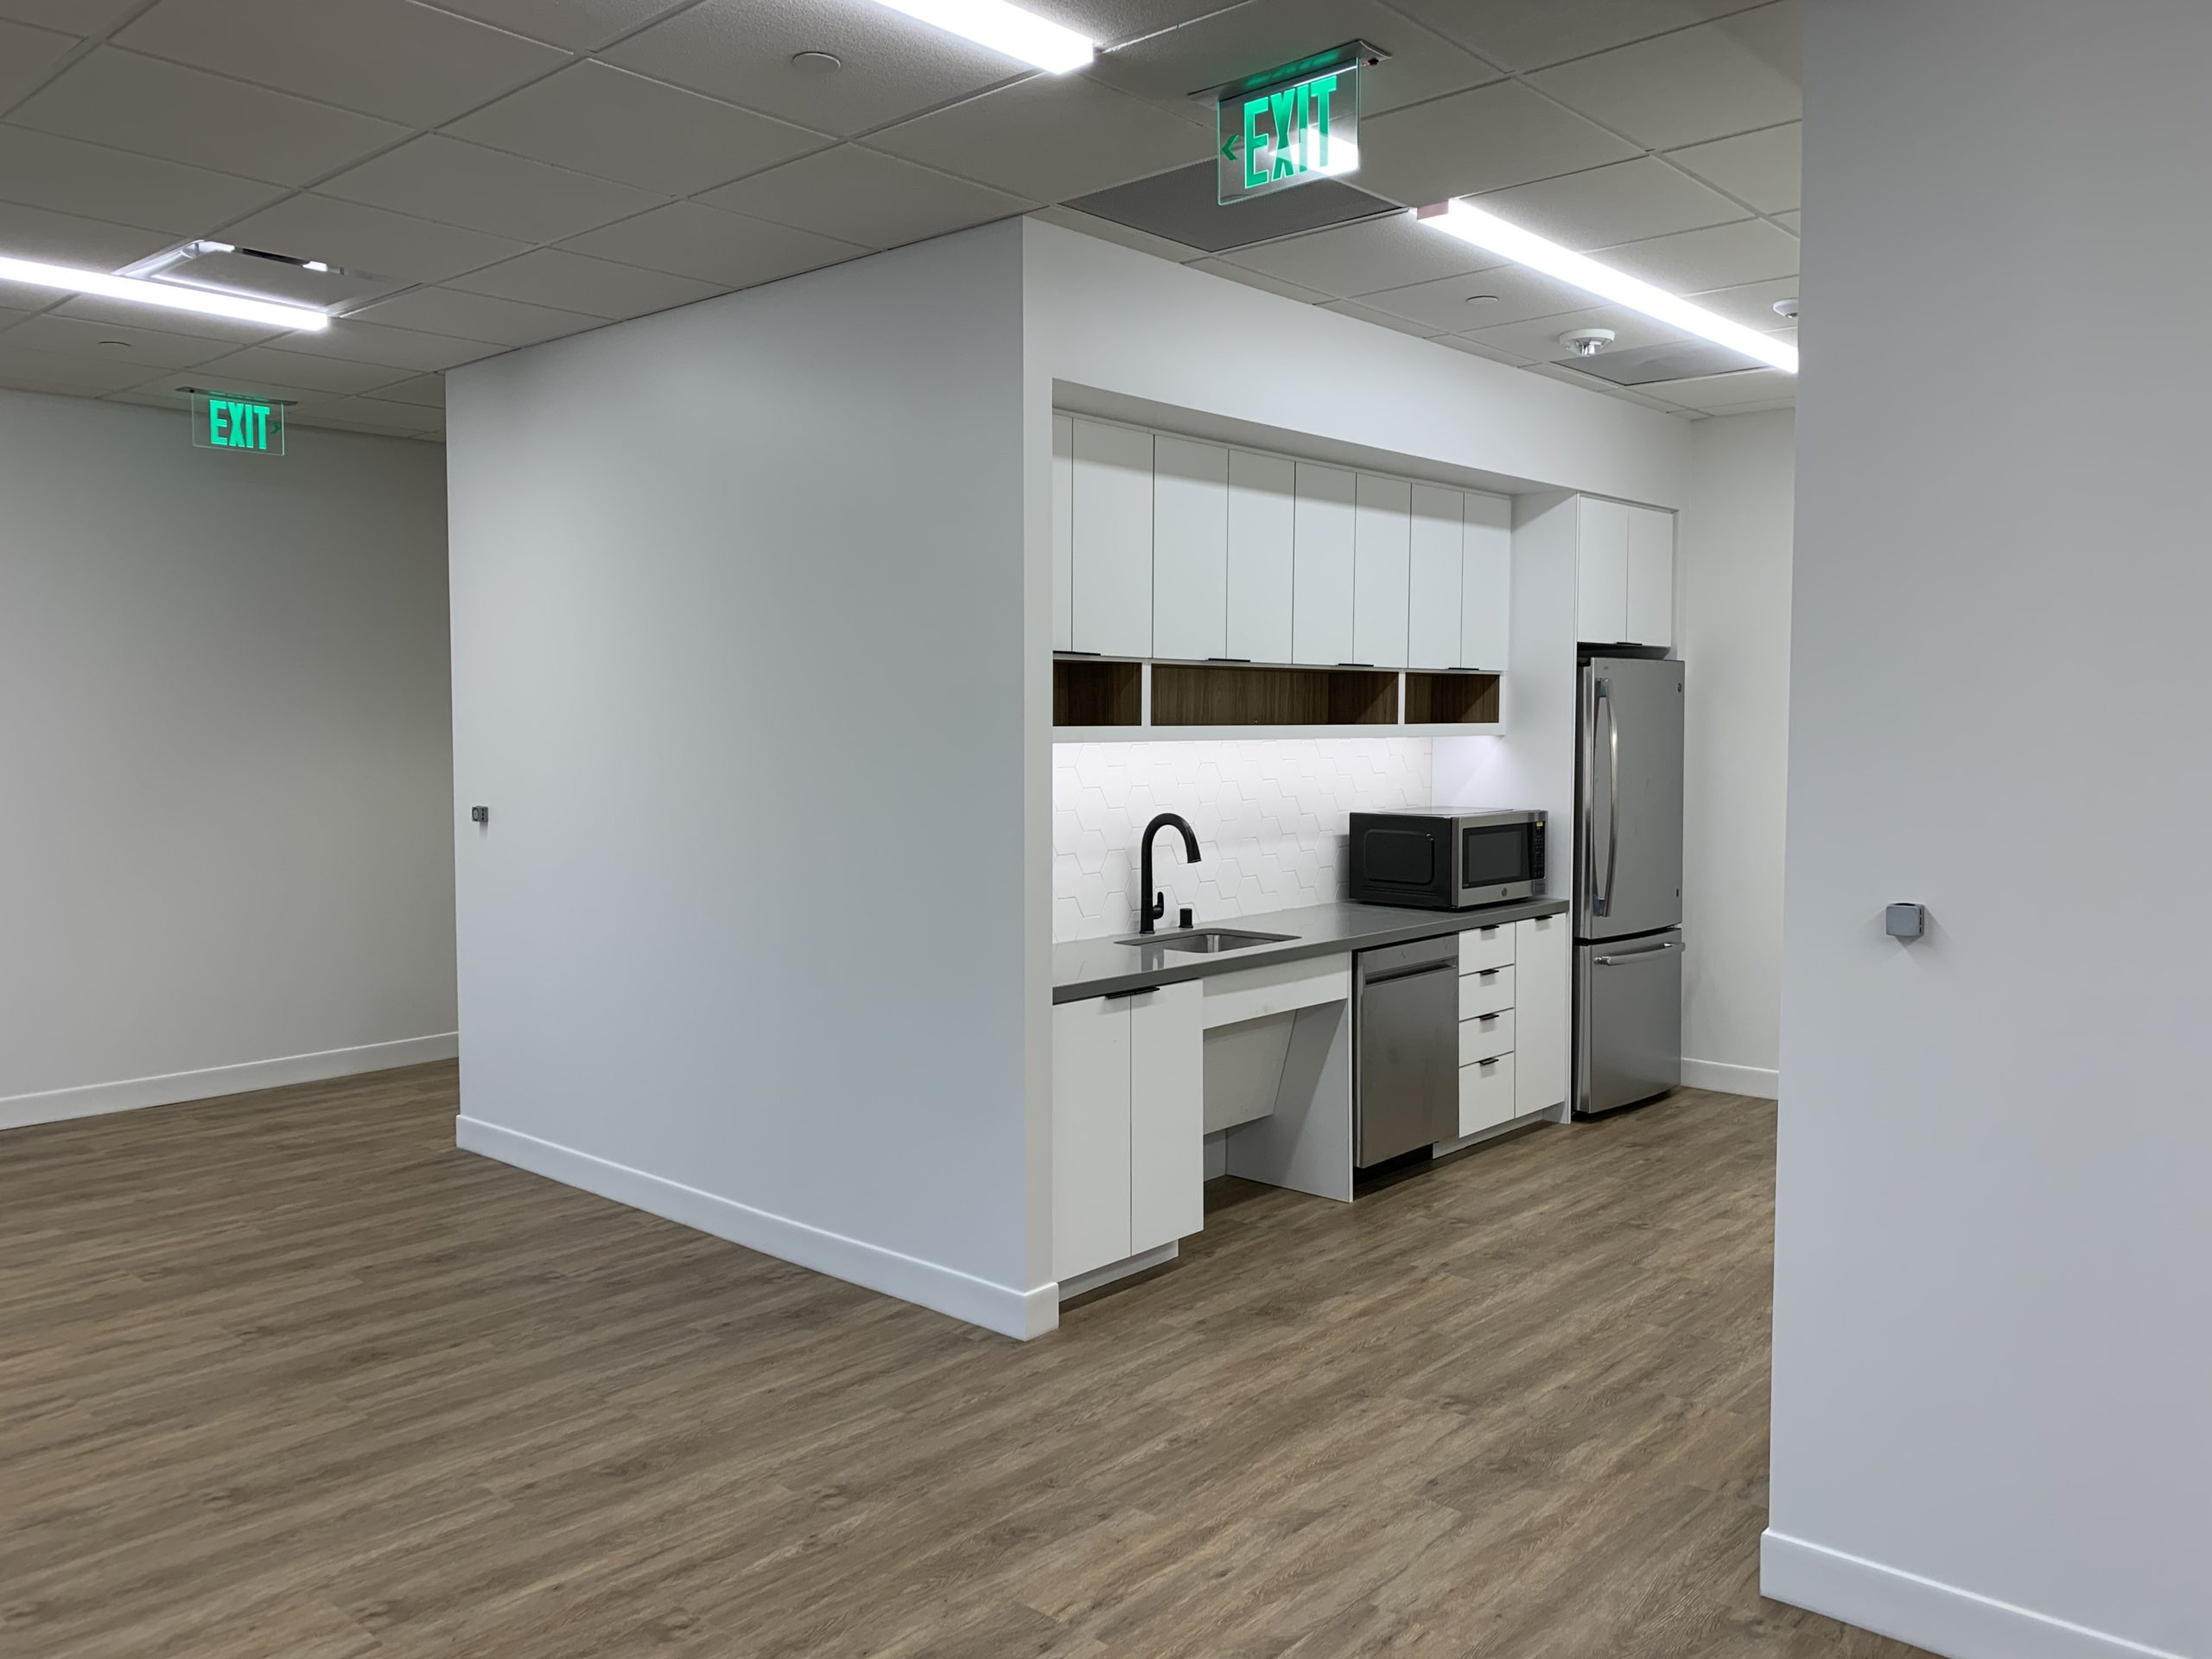 Preston Commons West – 2nd Floor Corridor, Restrooms and Spec Suites 240 Breakroom